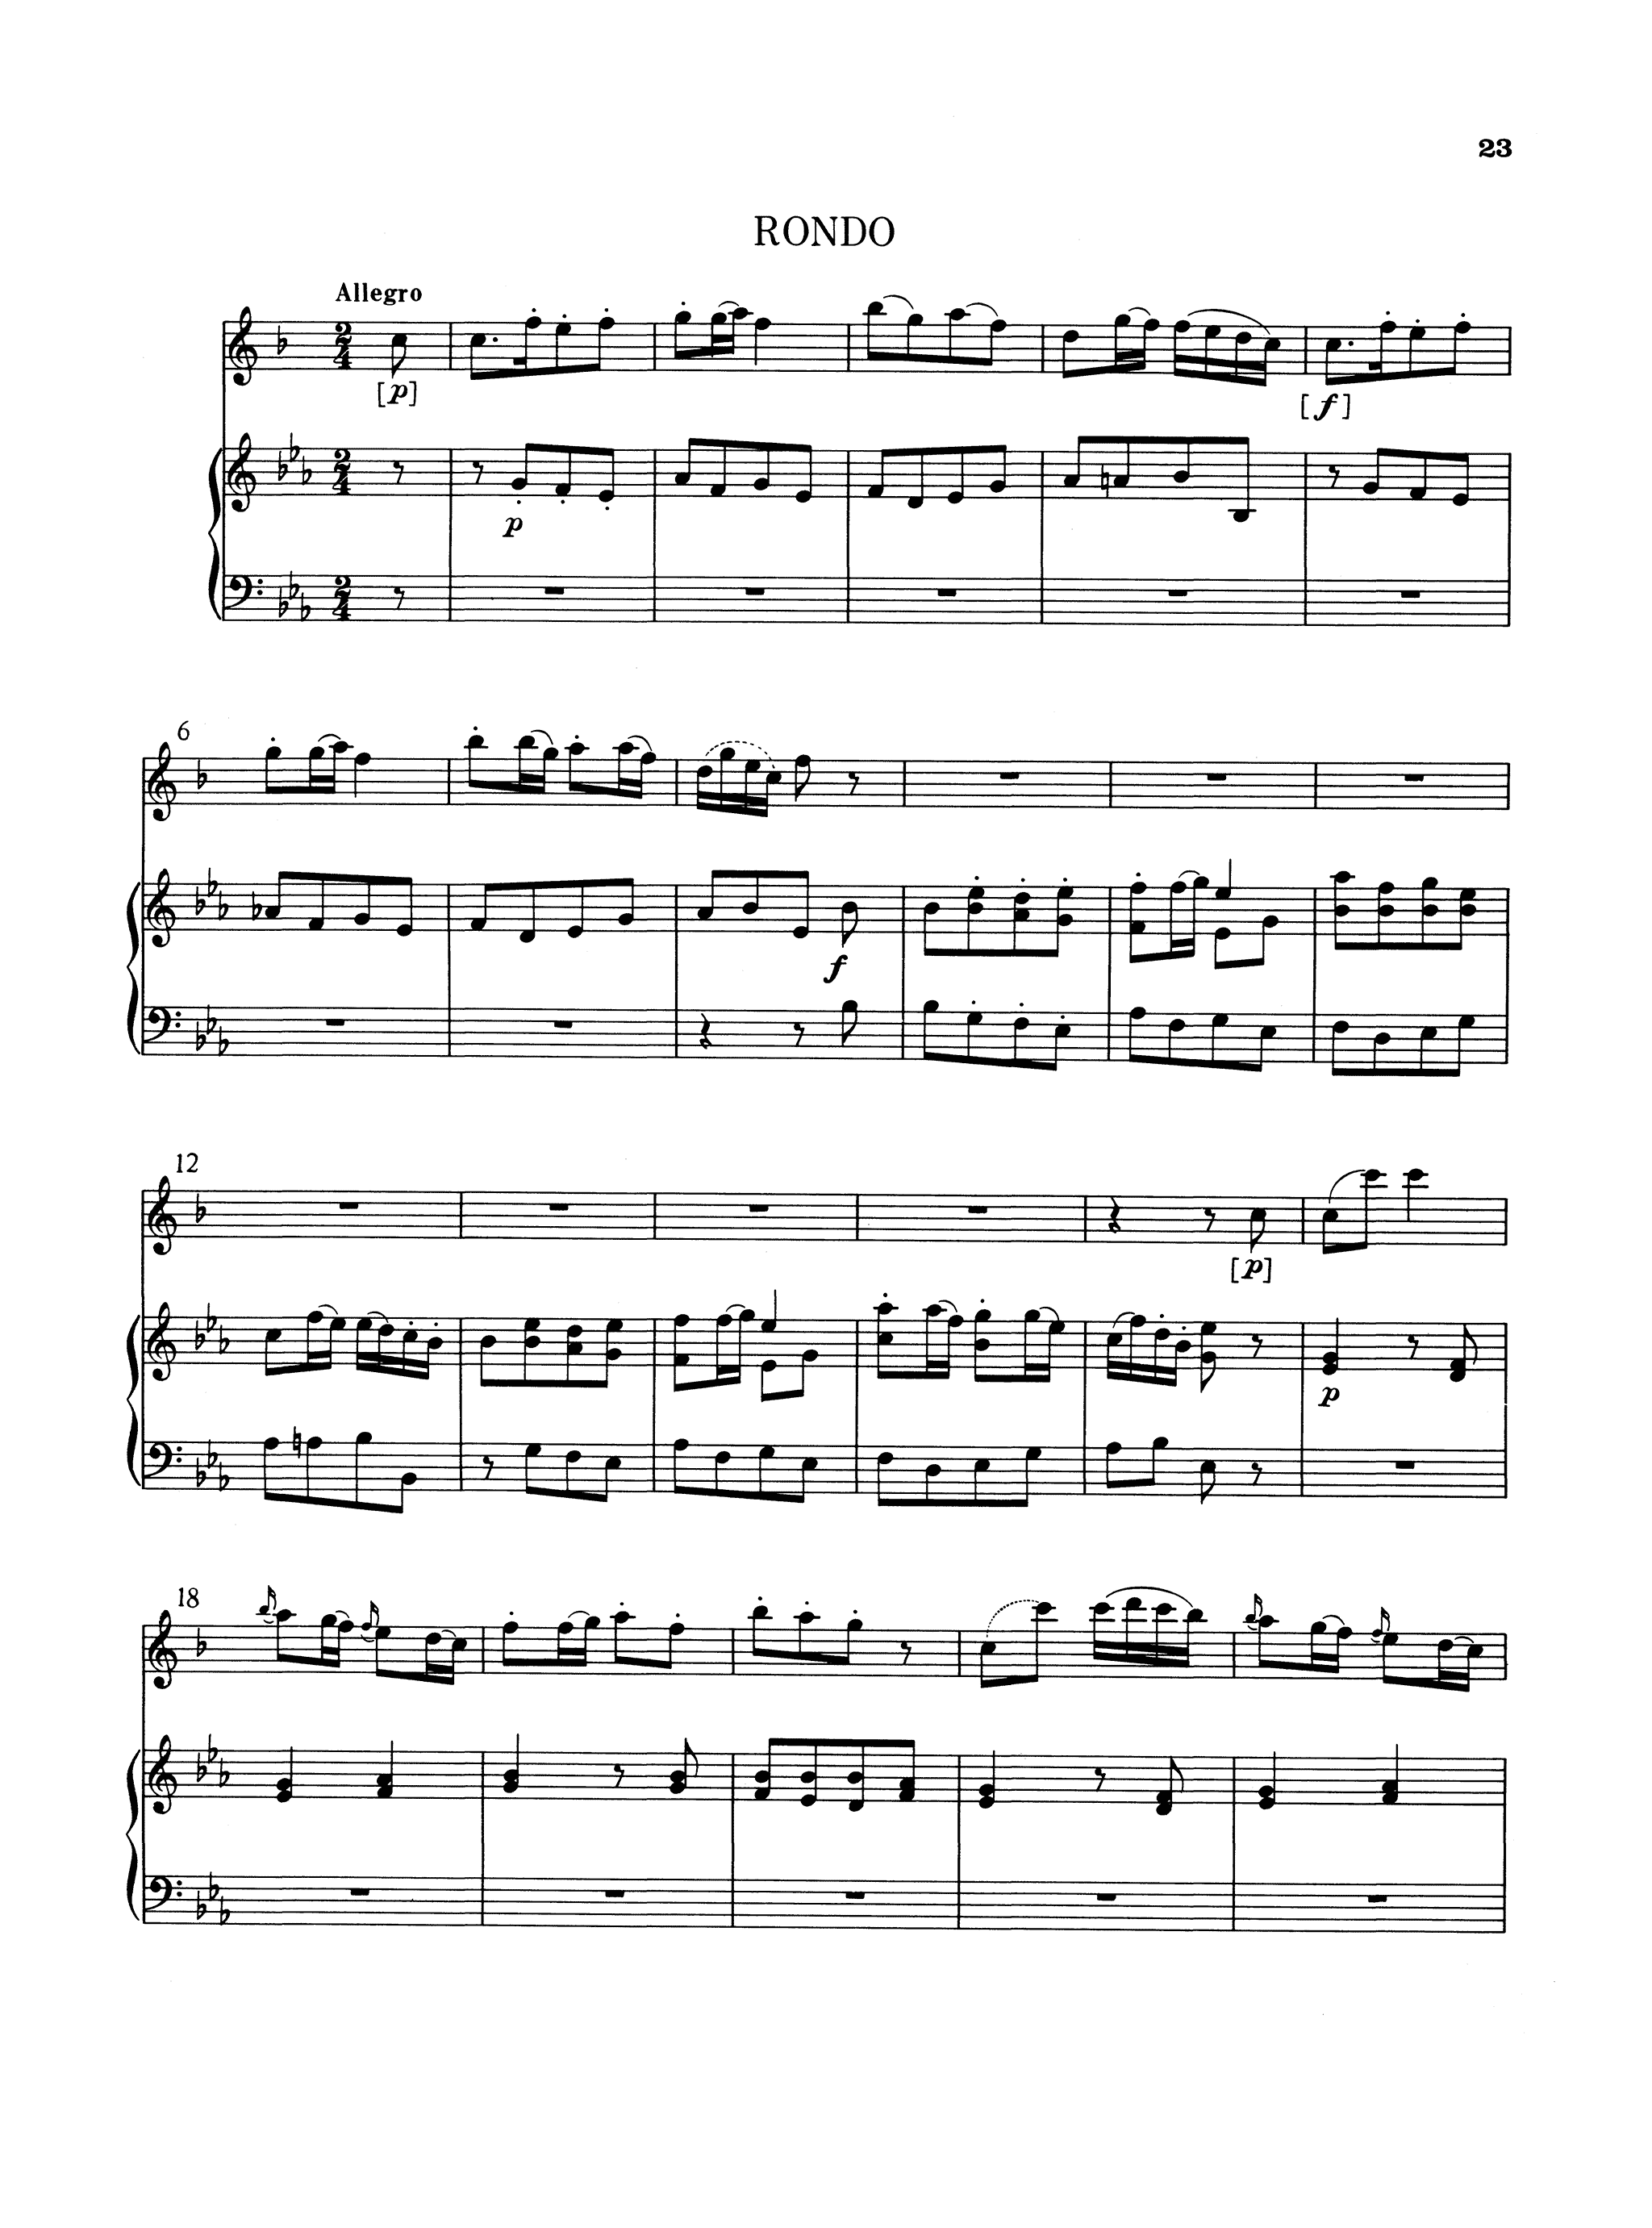 Carl Stamitz Basset Horn Concerto In C Major - Movement 3